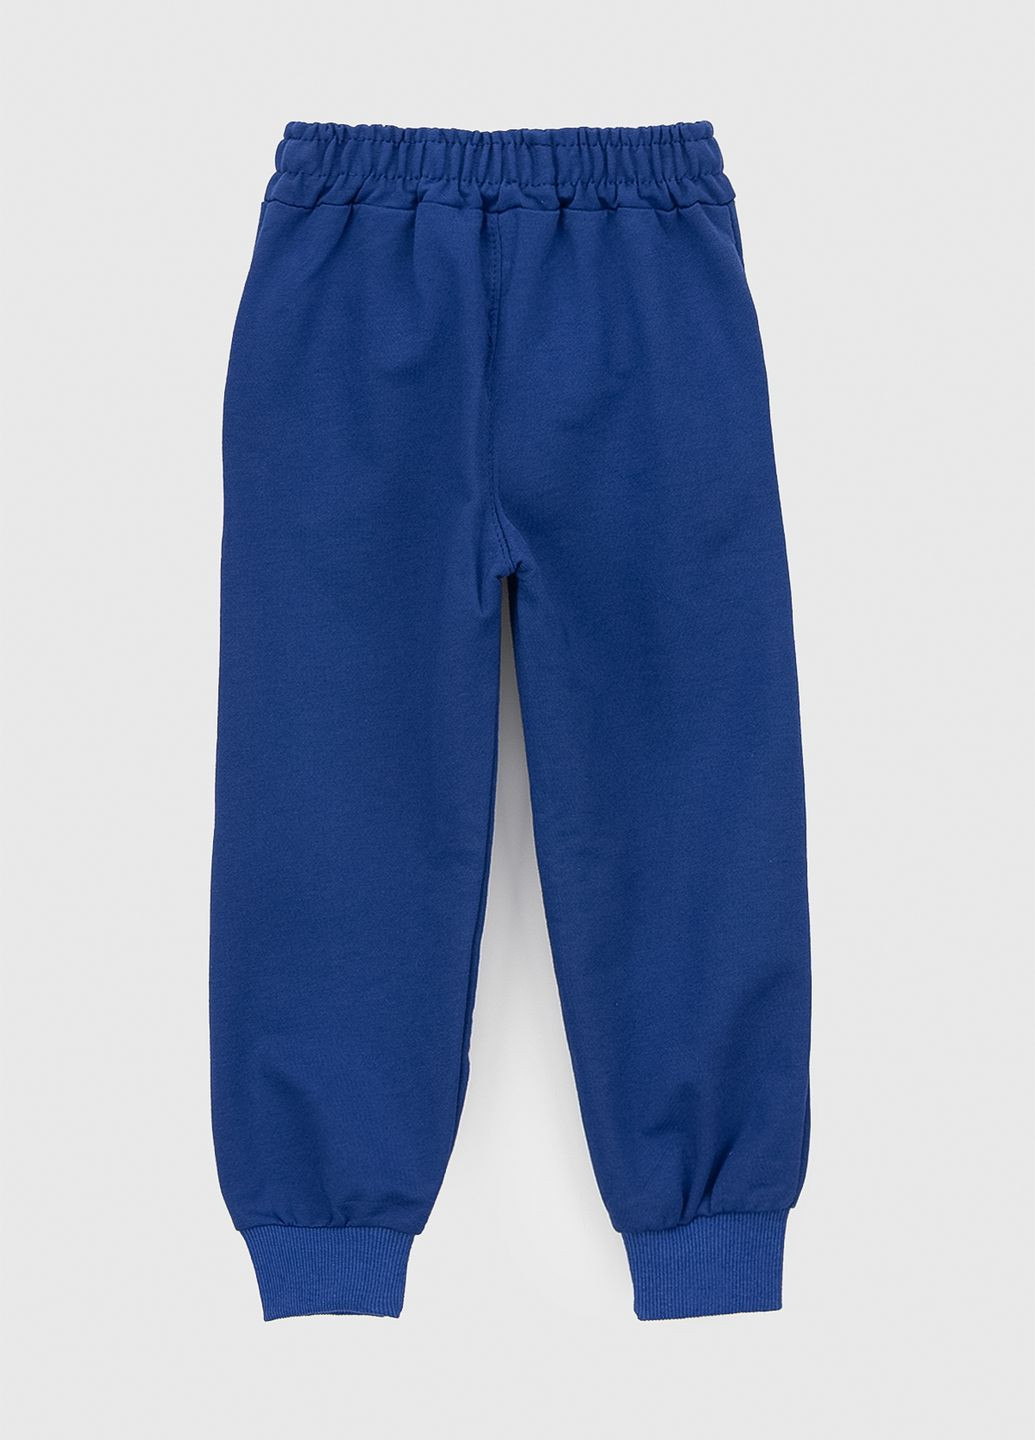 Синие спортивные демисезонные брюки Atescan